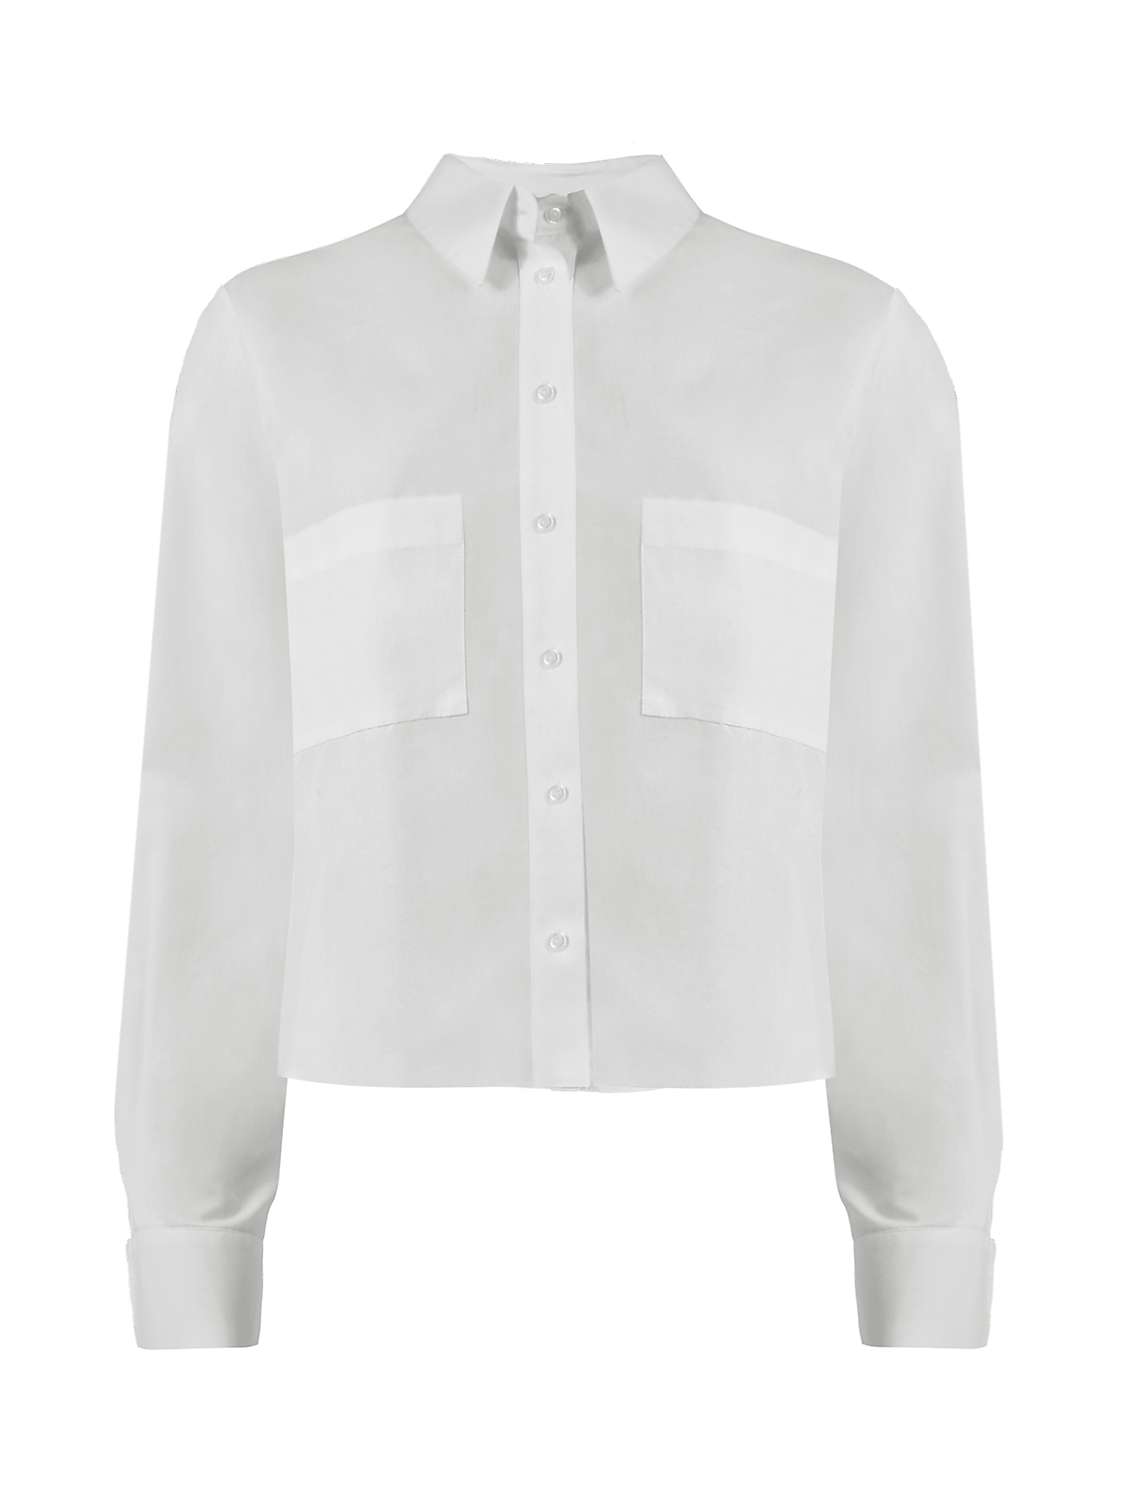 Ro&Zo Cotton Pocket Detail Shirt, White at John Lewis & Partners